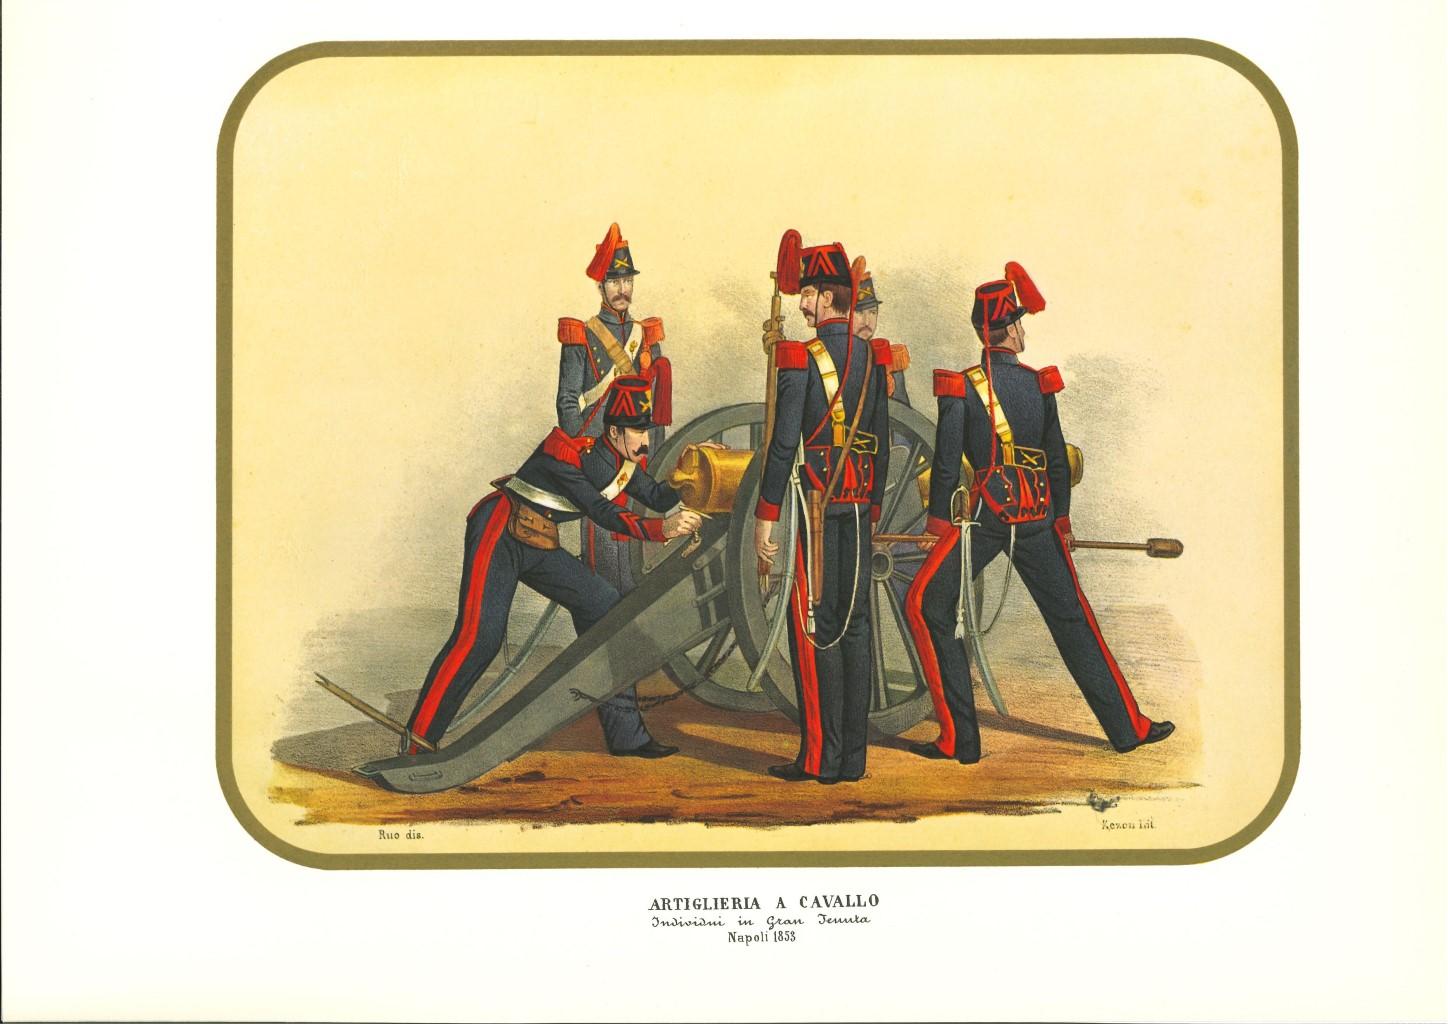 Artillerie à cheval k est une lithographie d'Antonio Zezon. Naples 1853.

Intéressante lithographie en couleur qui décrit un corps spécial de l'artillerie.

En excellent état, cette estampe fait partie de l'une des plus célèbres collections